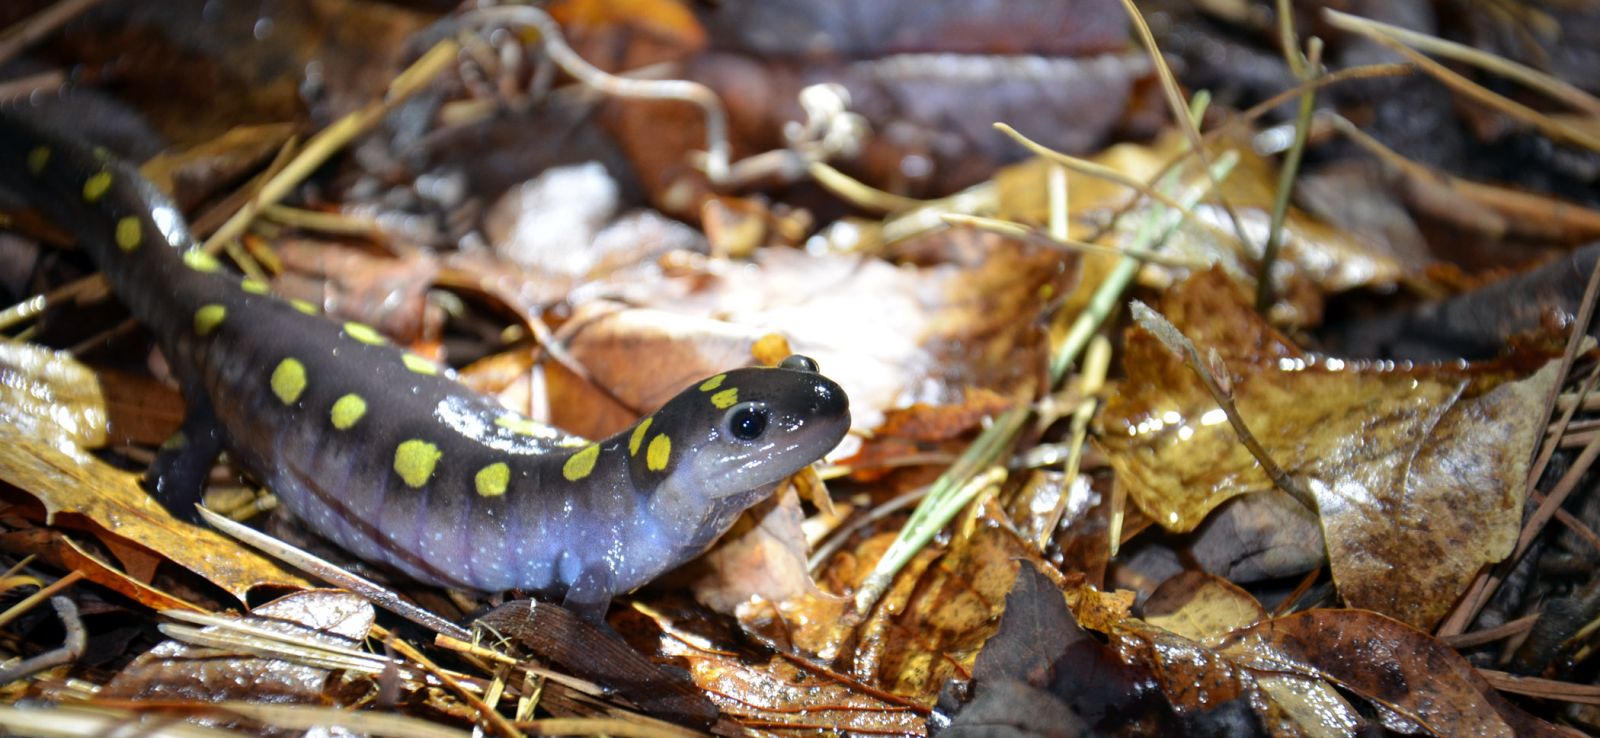 Salamander on leaves